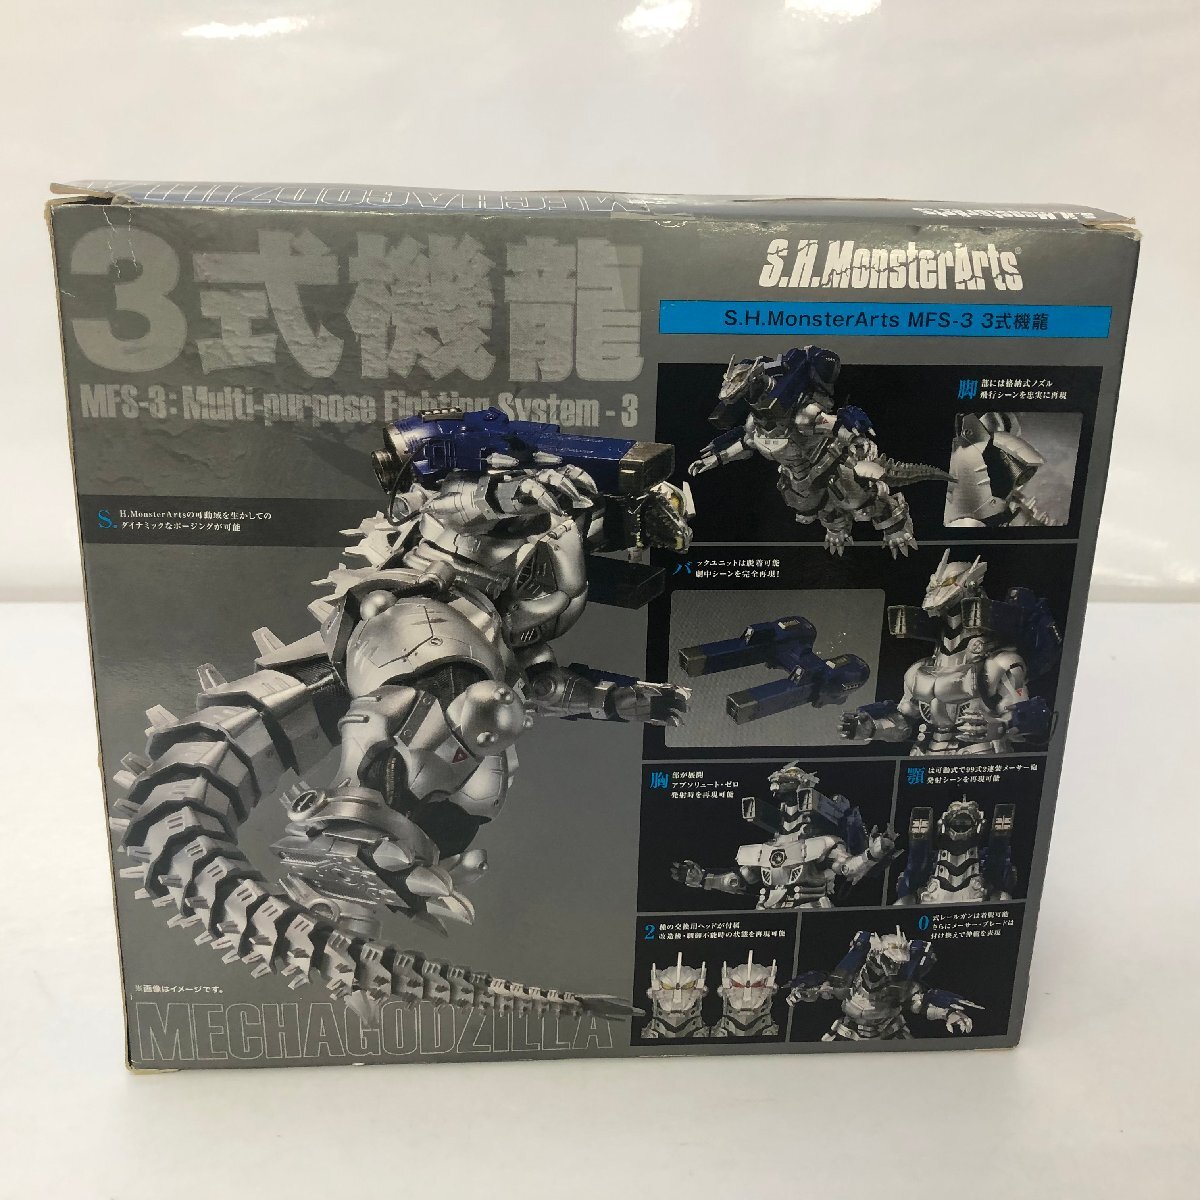 S.H.MonsterArts MFS-3 3式機龍 「ゴジラ×メカゴジラ」 フィギュア